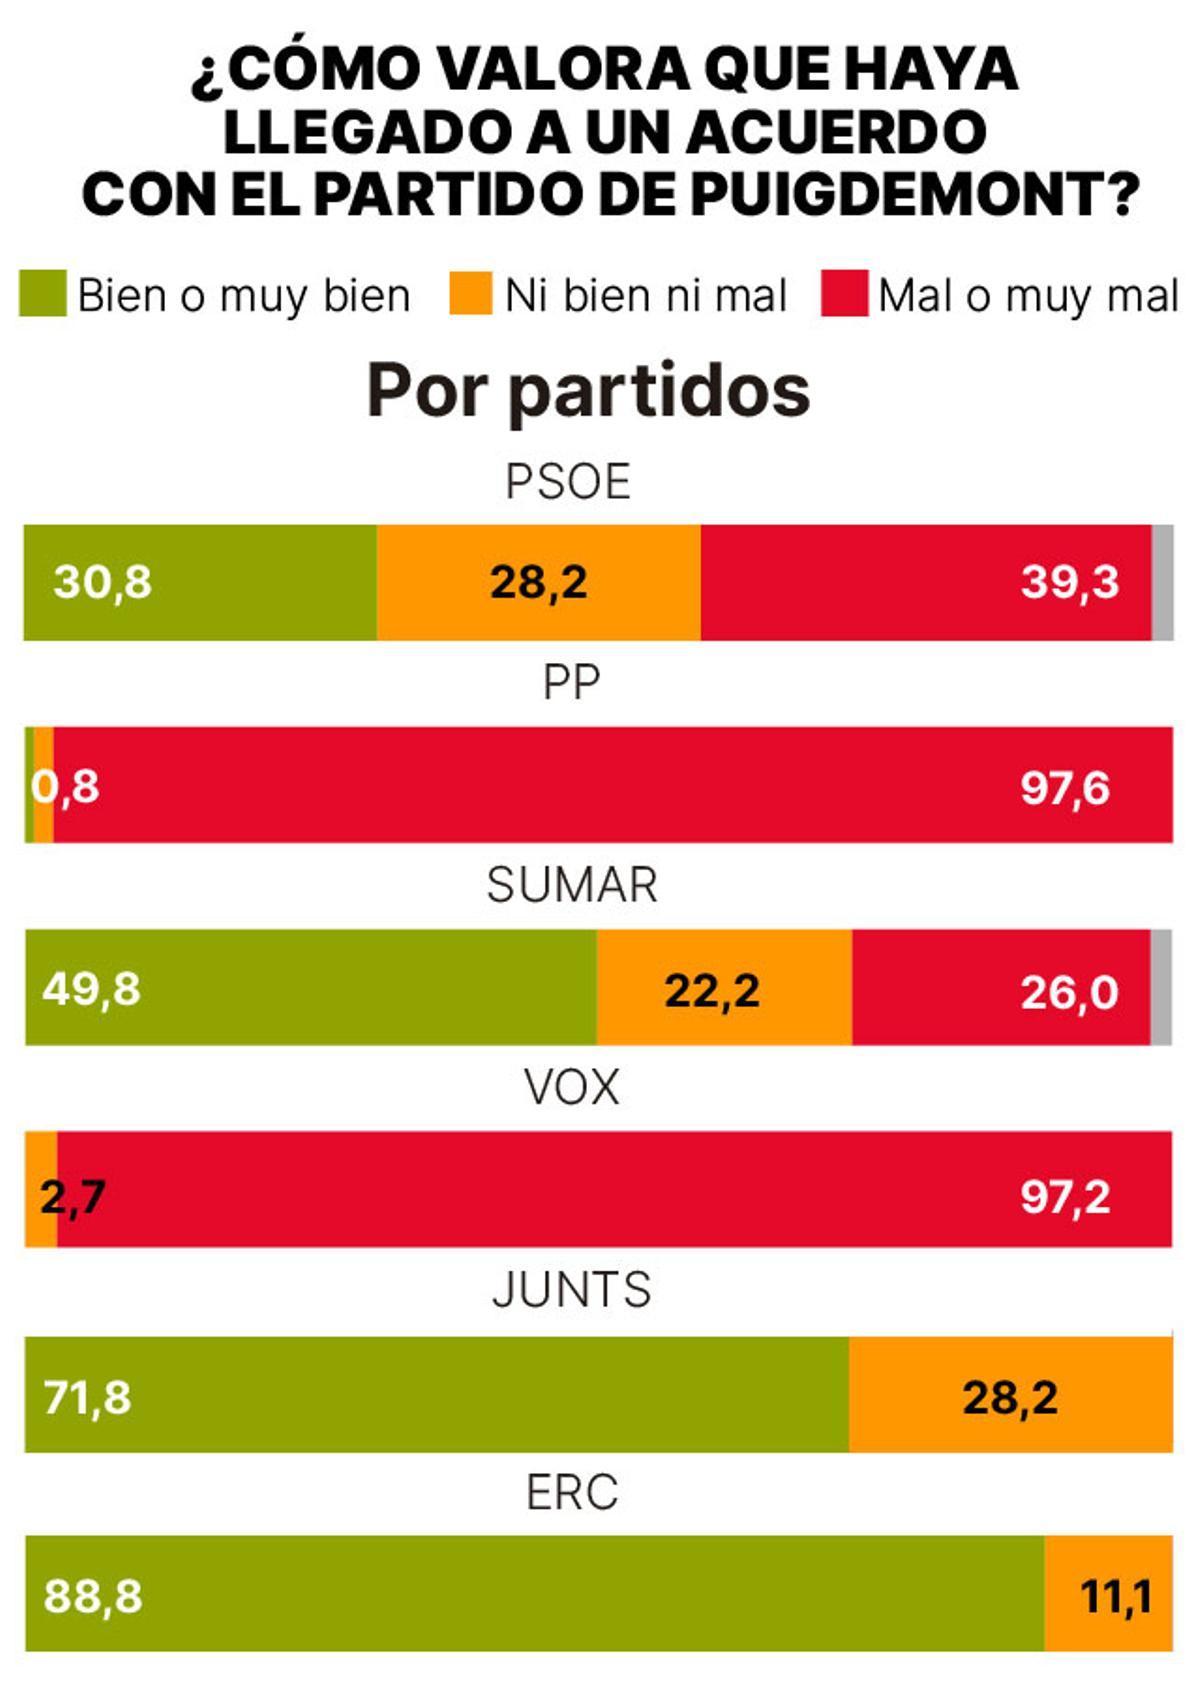 Valoración del acuerdo con Puigdemont, por partidos.